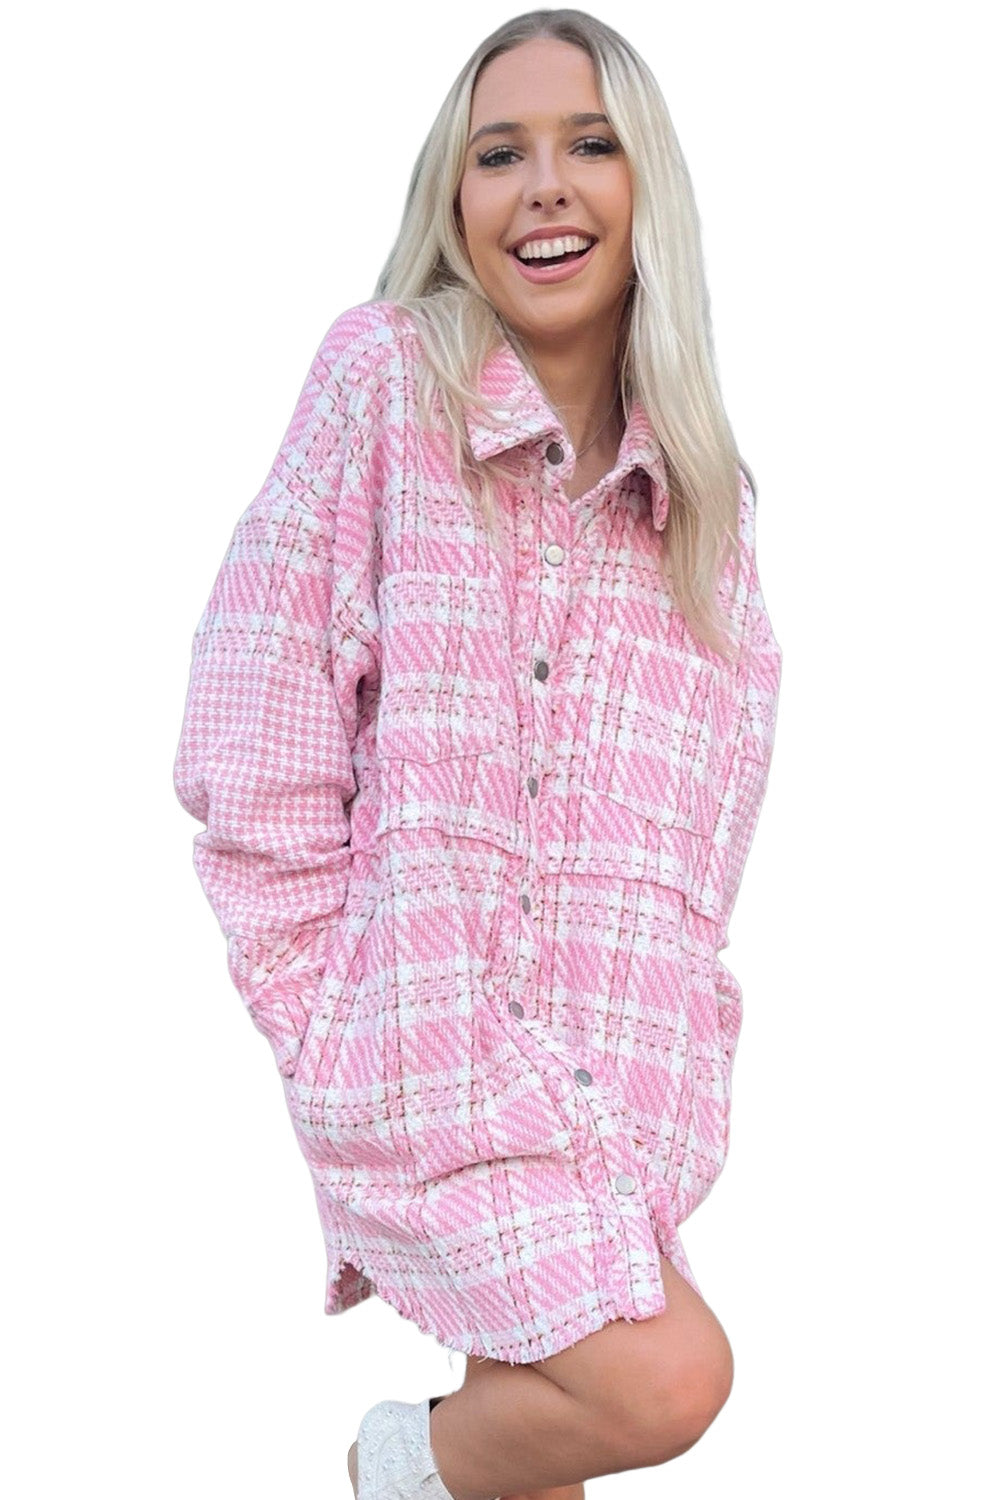 Ogromna majica iz tvida, ki se spaja z rožnatimi zobmi